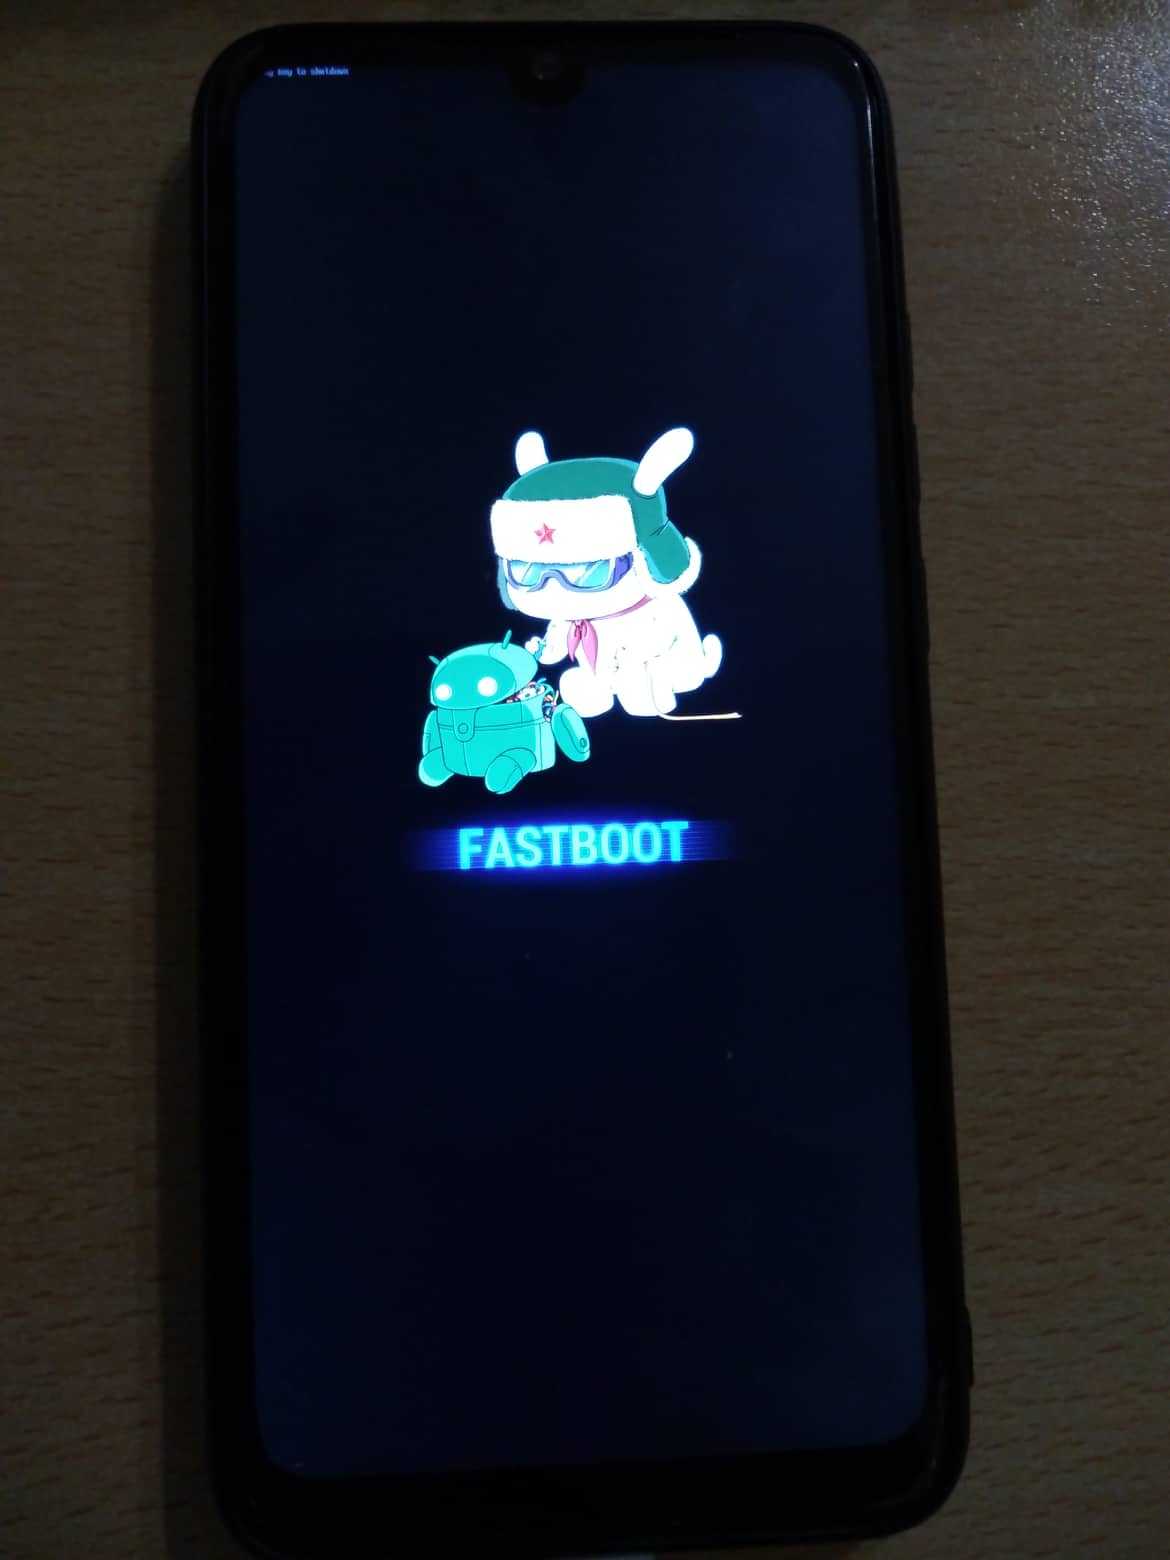 Режим fastboot на телефоне android – зачем нужен, как войти/выйти